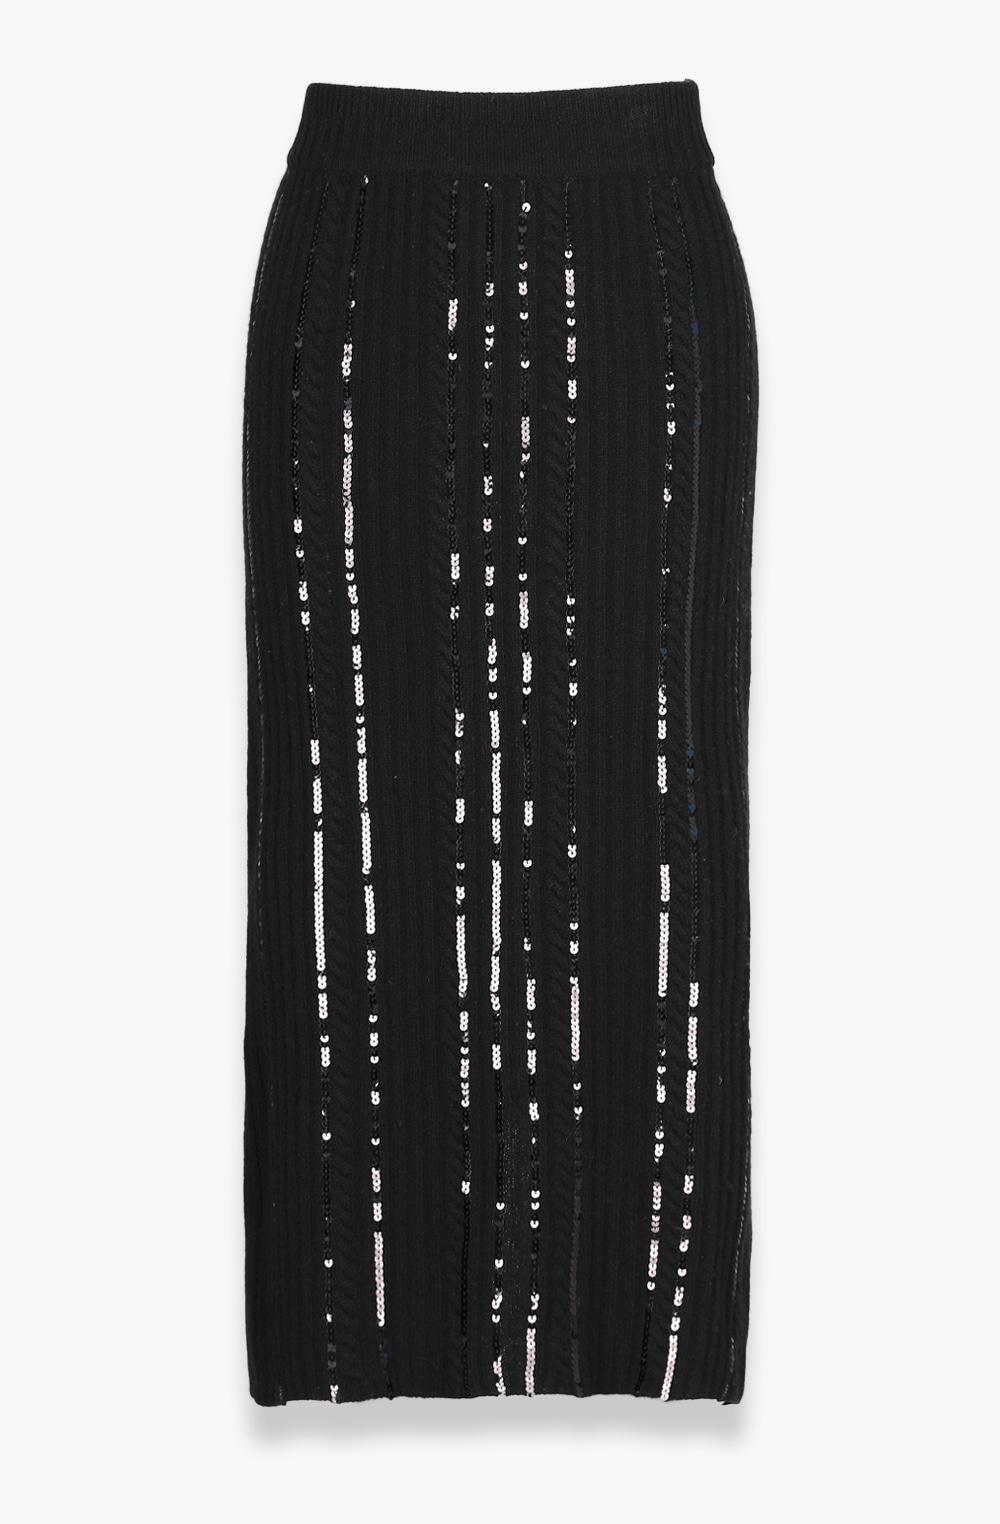 HIGH QUALITY LINE - Wool Cash Sequin Embellished Knit Skirt (BLACK)